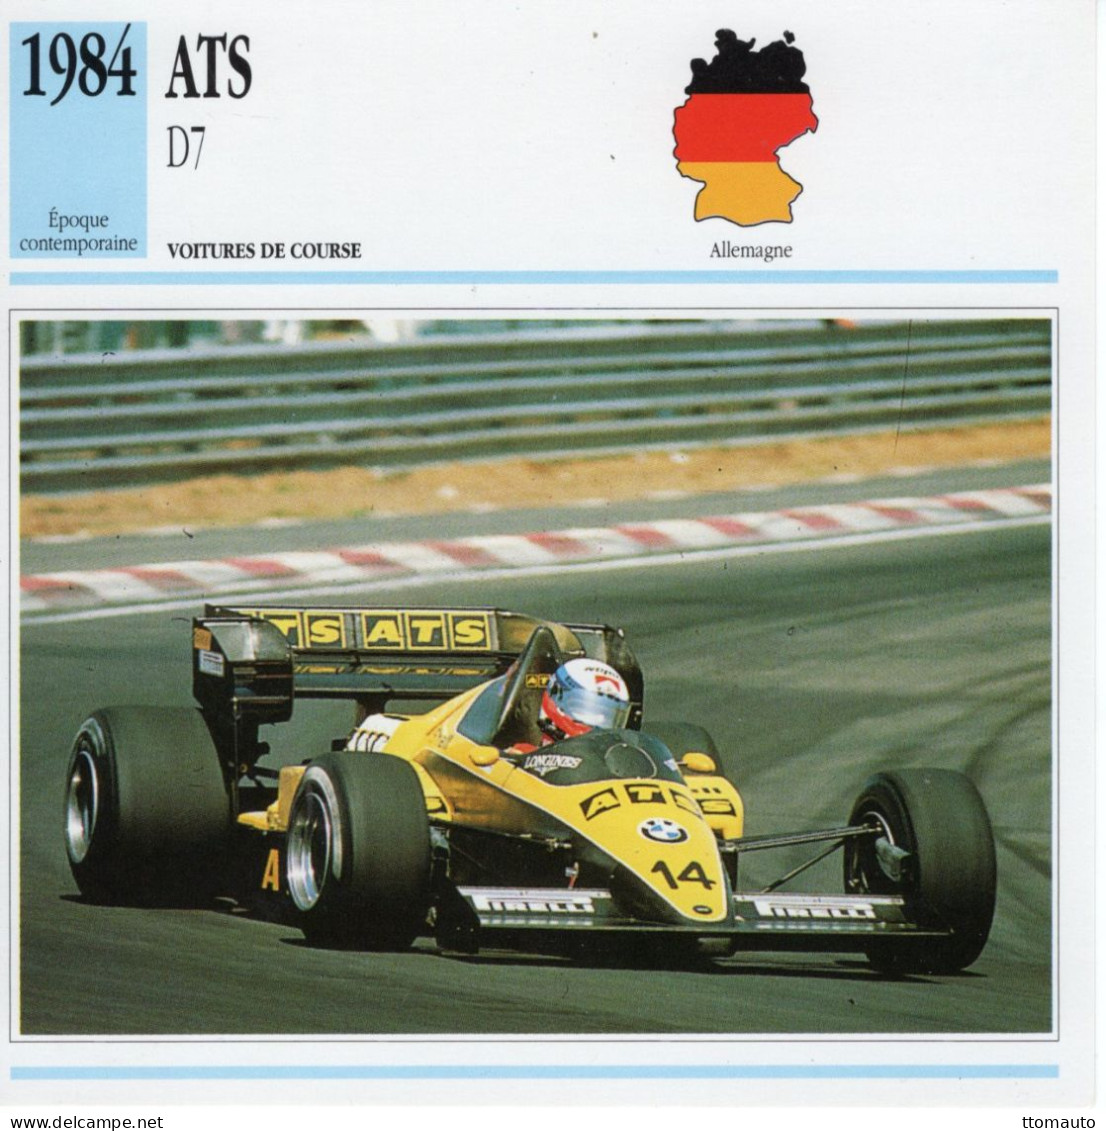 Fiche  -  Voiture De Course F1  -  ATS D7/01  (1984)  - Pilote: Manfred Winkelhock -  Carte De Collection - Cars